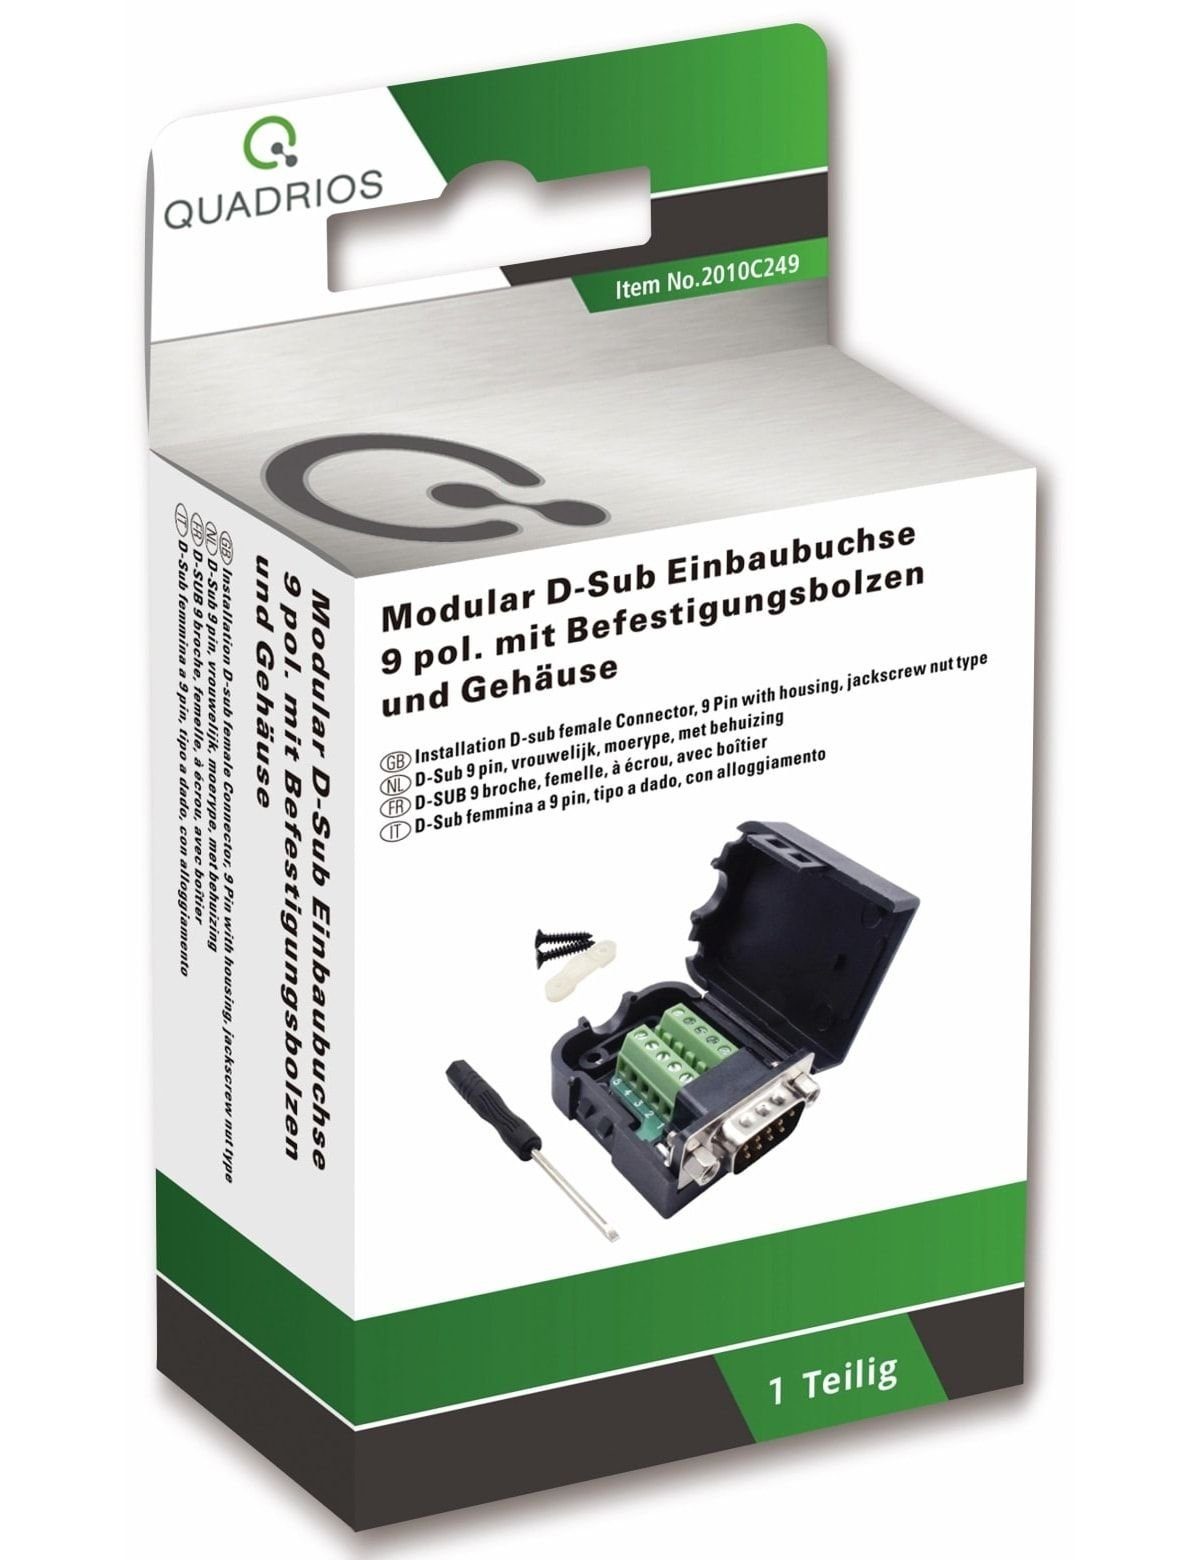 2010C249, USB-Modular-Set, Quadrios D-Sub Klemmen QUADRIOS,